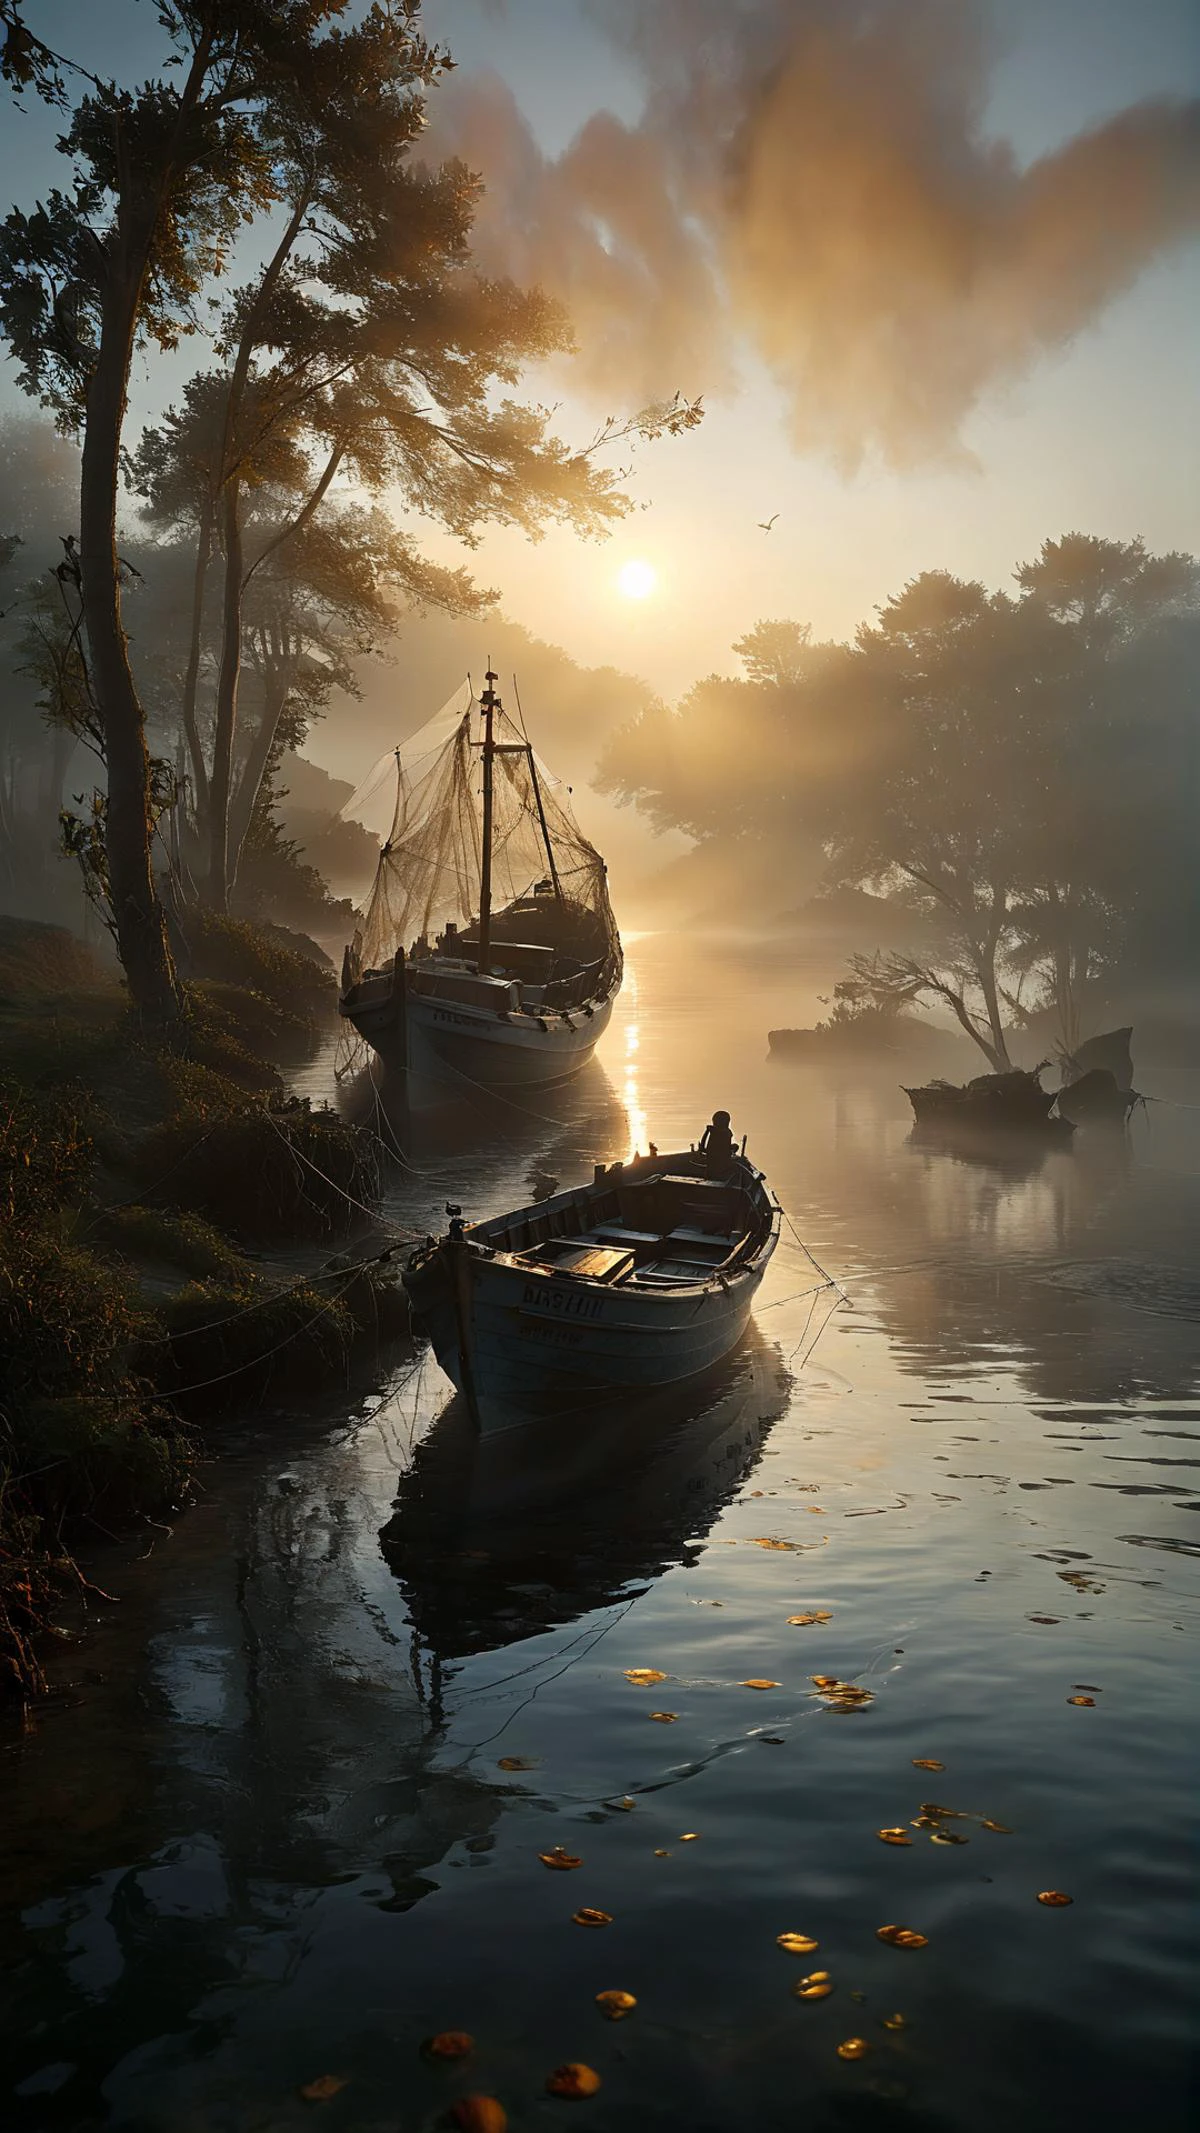 低い天使, 霧のかかった朝のシーンには、その日の漁獲物のために網を準備した漁船が水面に静かに浮かんでいる様子が描かれている。. 霧がゆっくりと晴れて消えていくにつれ、夜明けの黄金の光が船とその周囲に暖かい輝きを投げかける。. 水面がきらきらと輝き、夢のような雰囲気を醸し出しています. 船の索具や網の細部まで巧みに描写されており、シーンのリアリティを高めている。. 色彩は豊かで鮮やかで、海の上の穏やかな朝のエッセンスを捉えています。. 全体の構成は調和がとれており、視覚的にも美しく、傑出した芸術作品となっている。, dvr-lnds-sdxl 